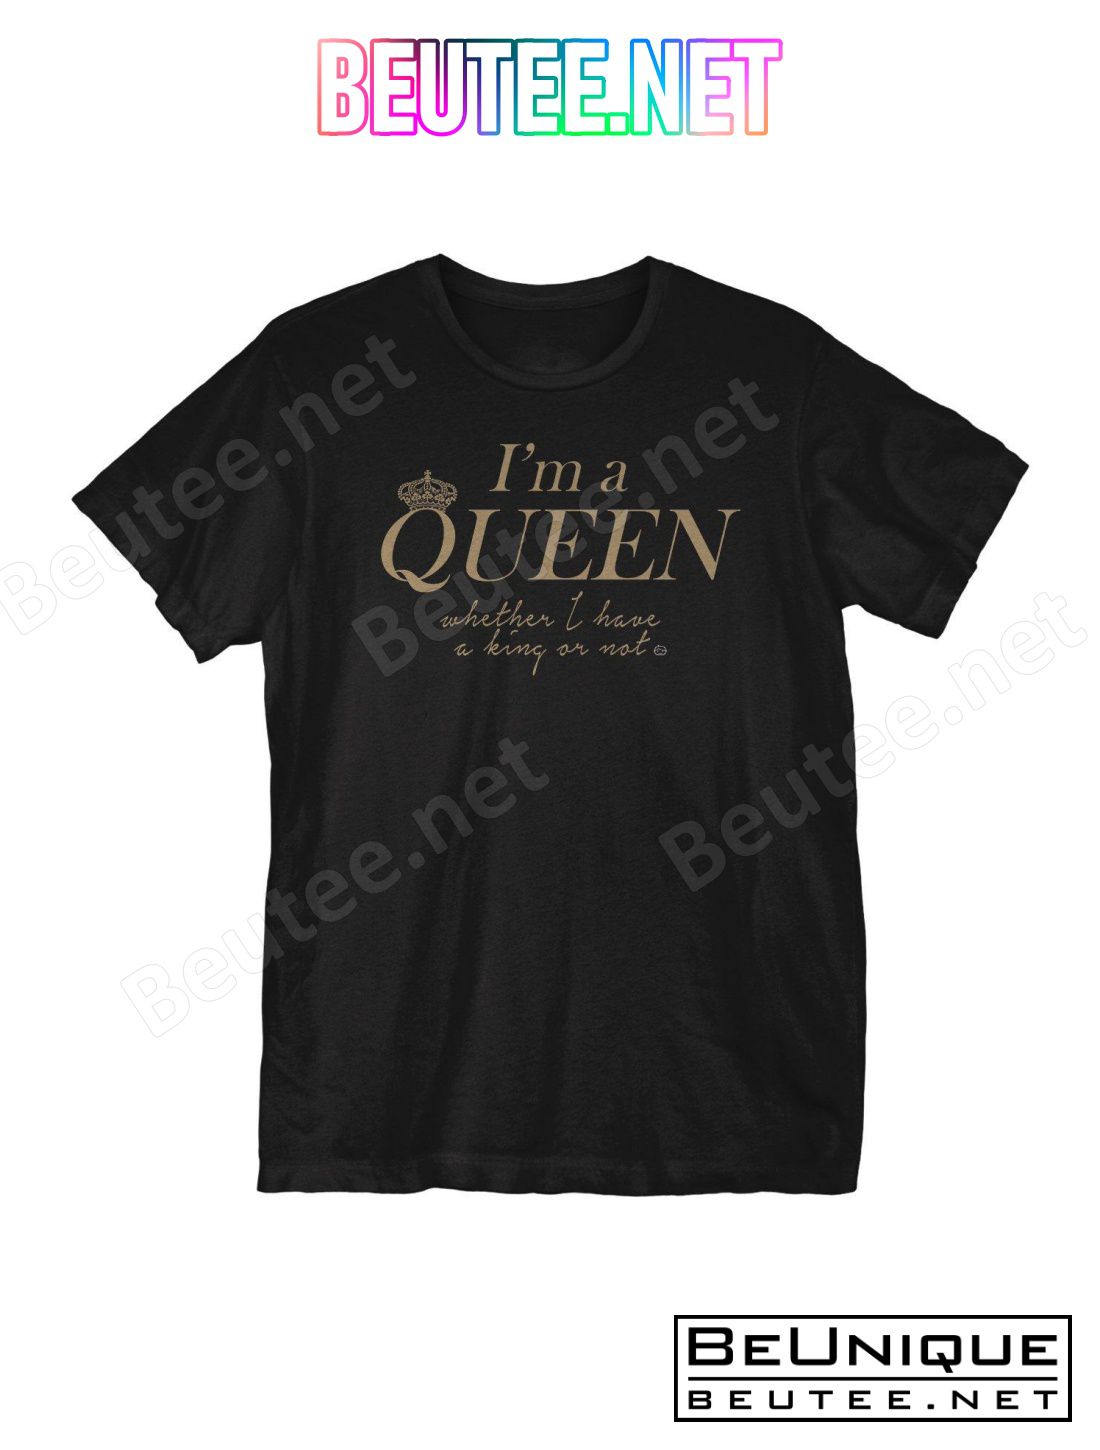 I'm A Queen T-Shirt